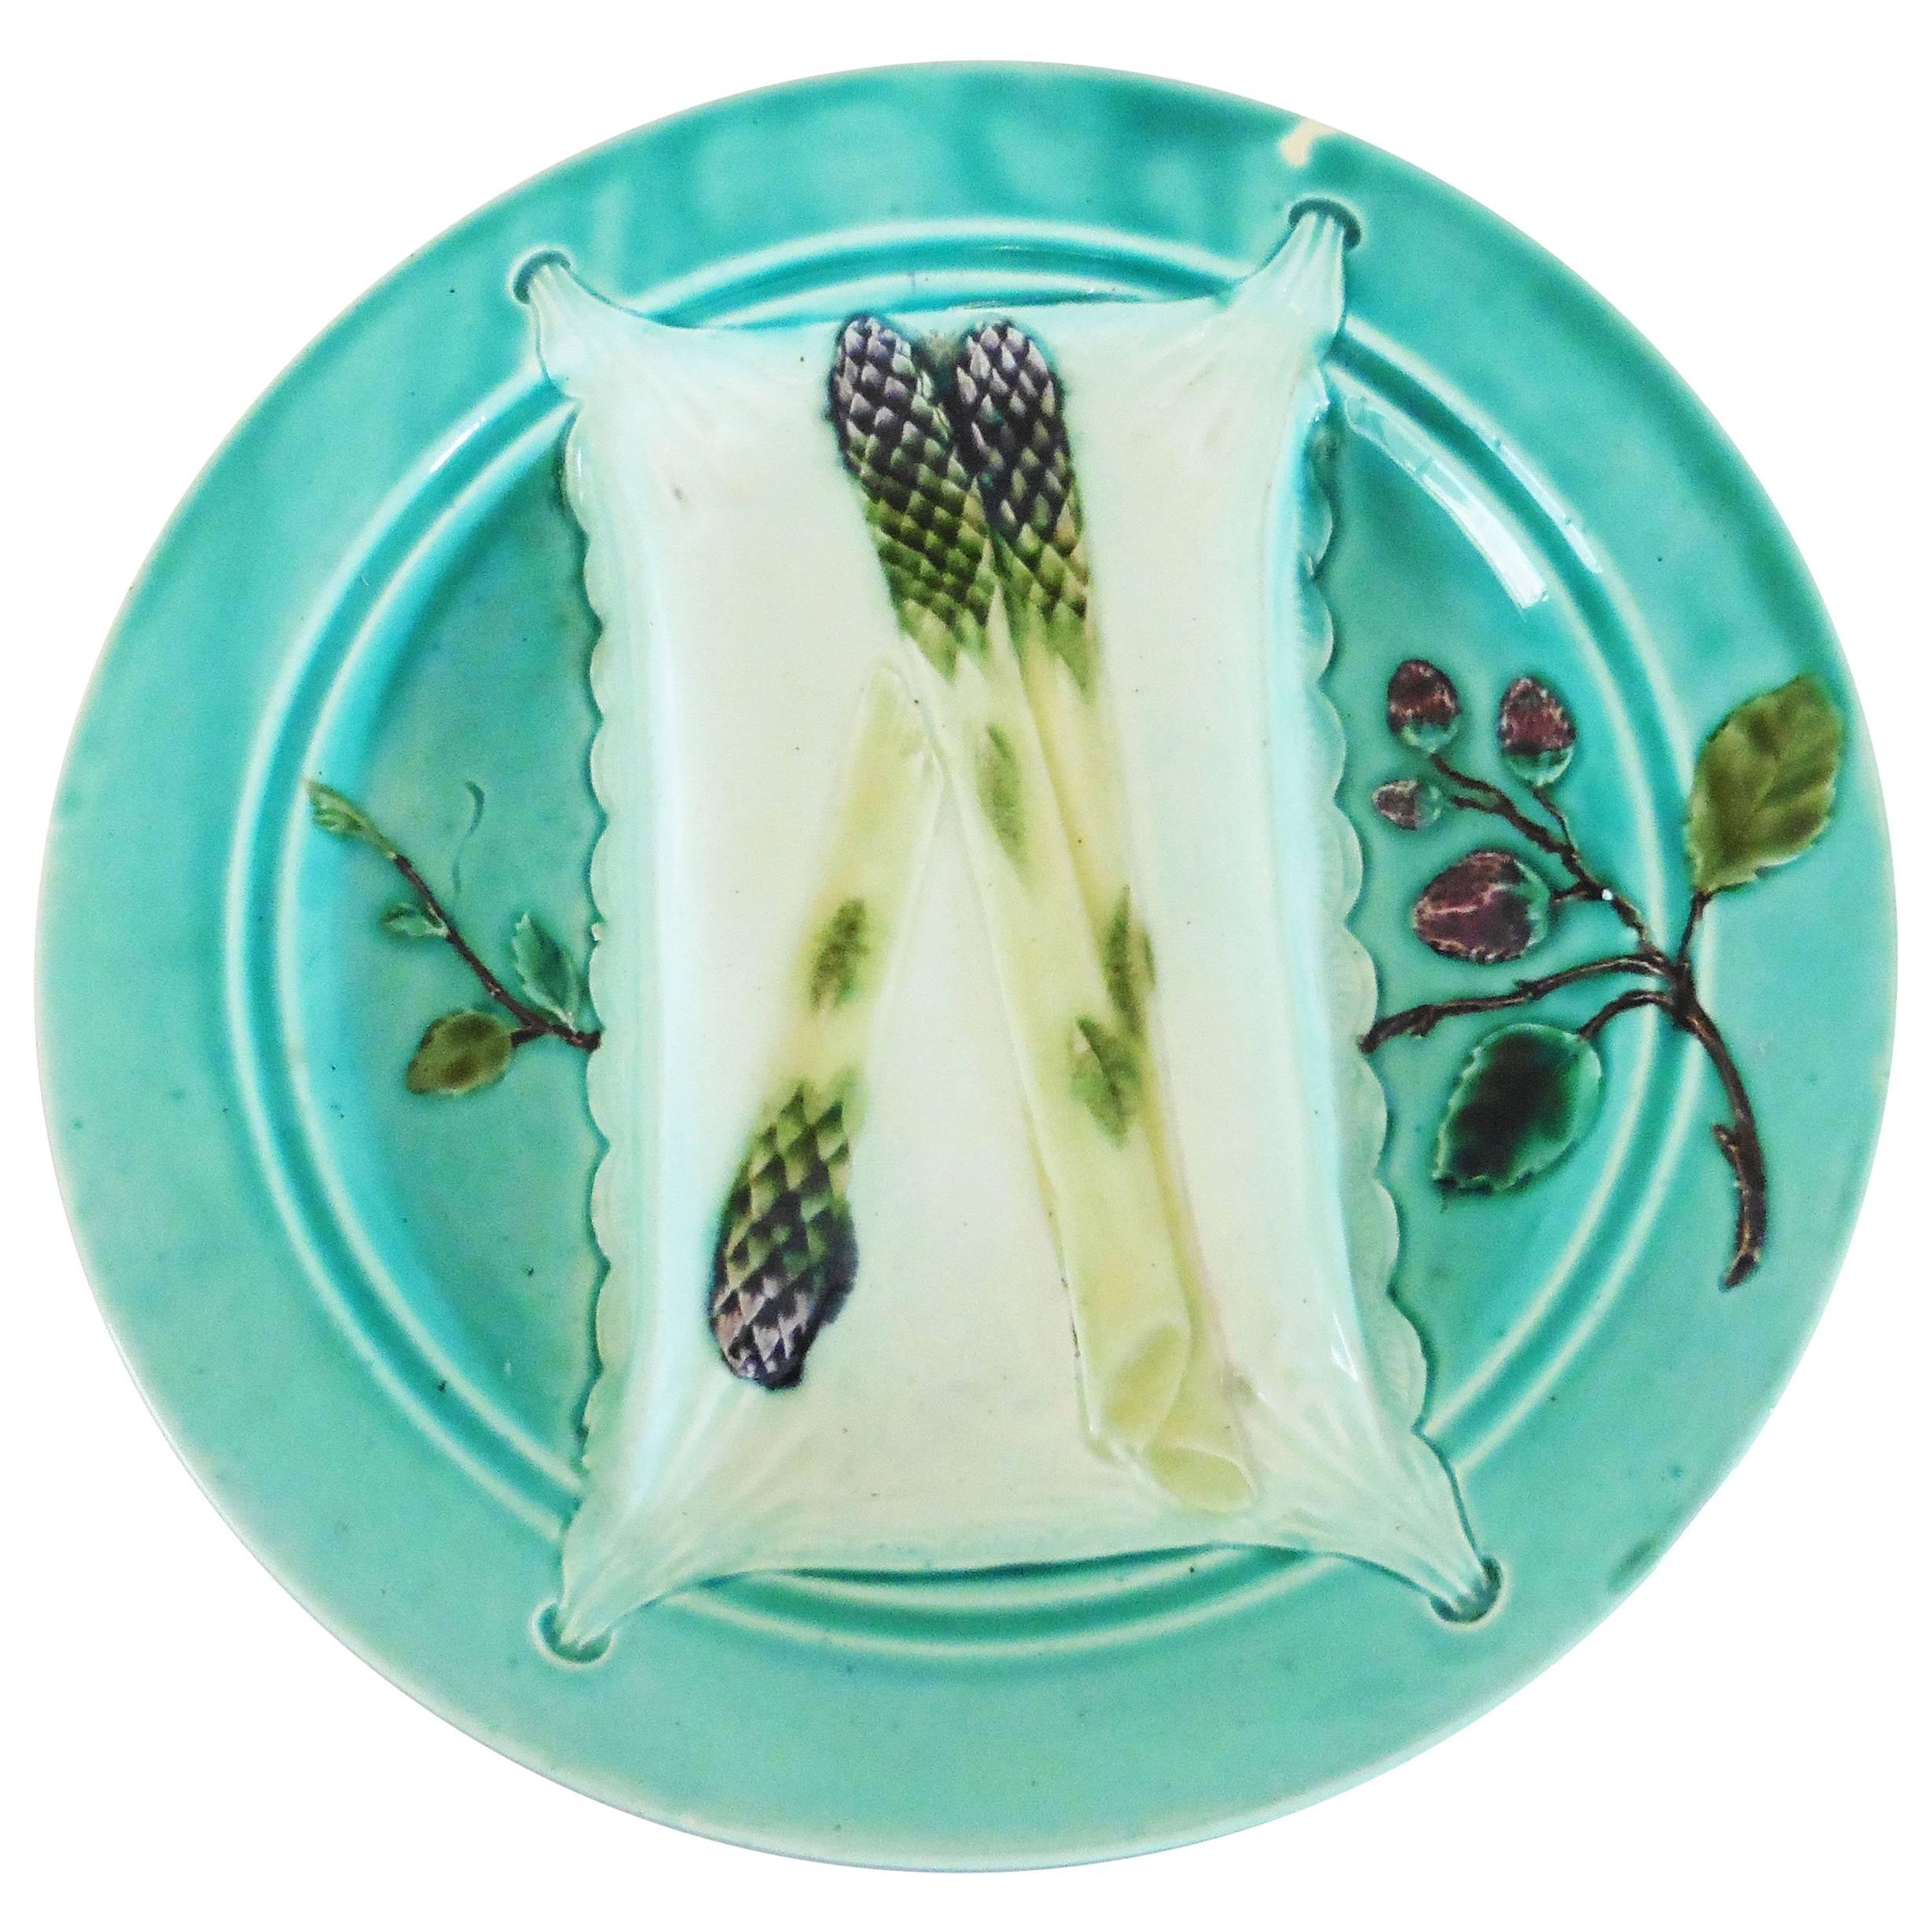 Assiette à asperges en majolique turquoise du 19ème siècle de Luneville